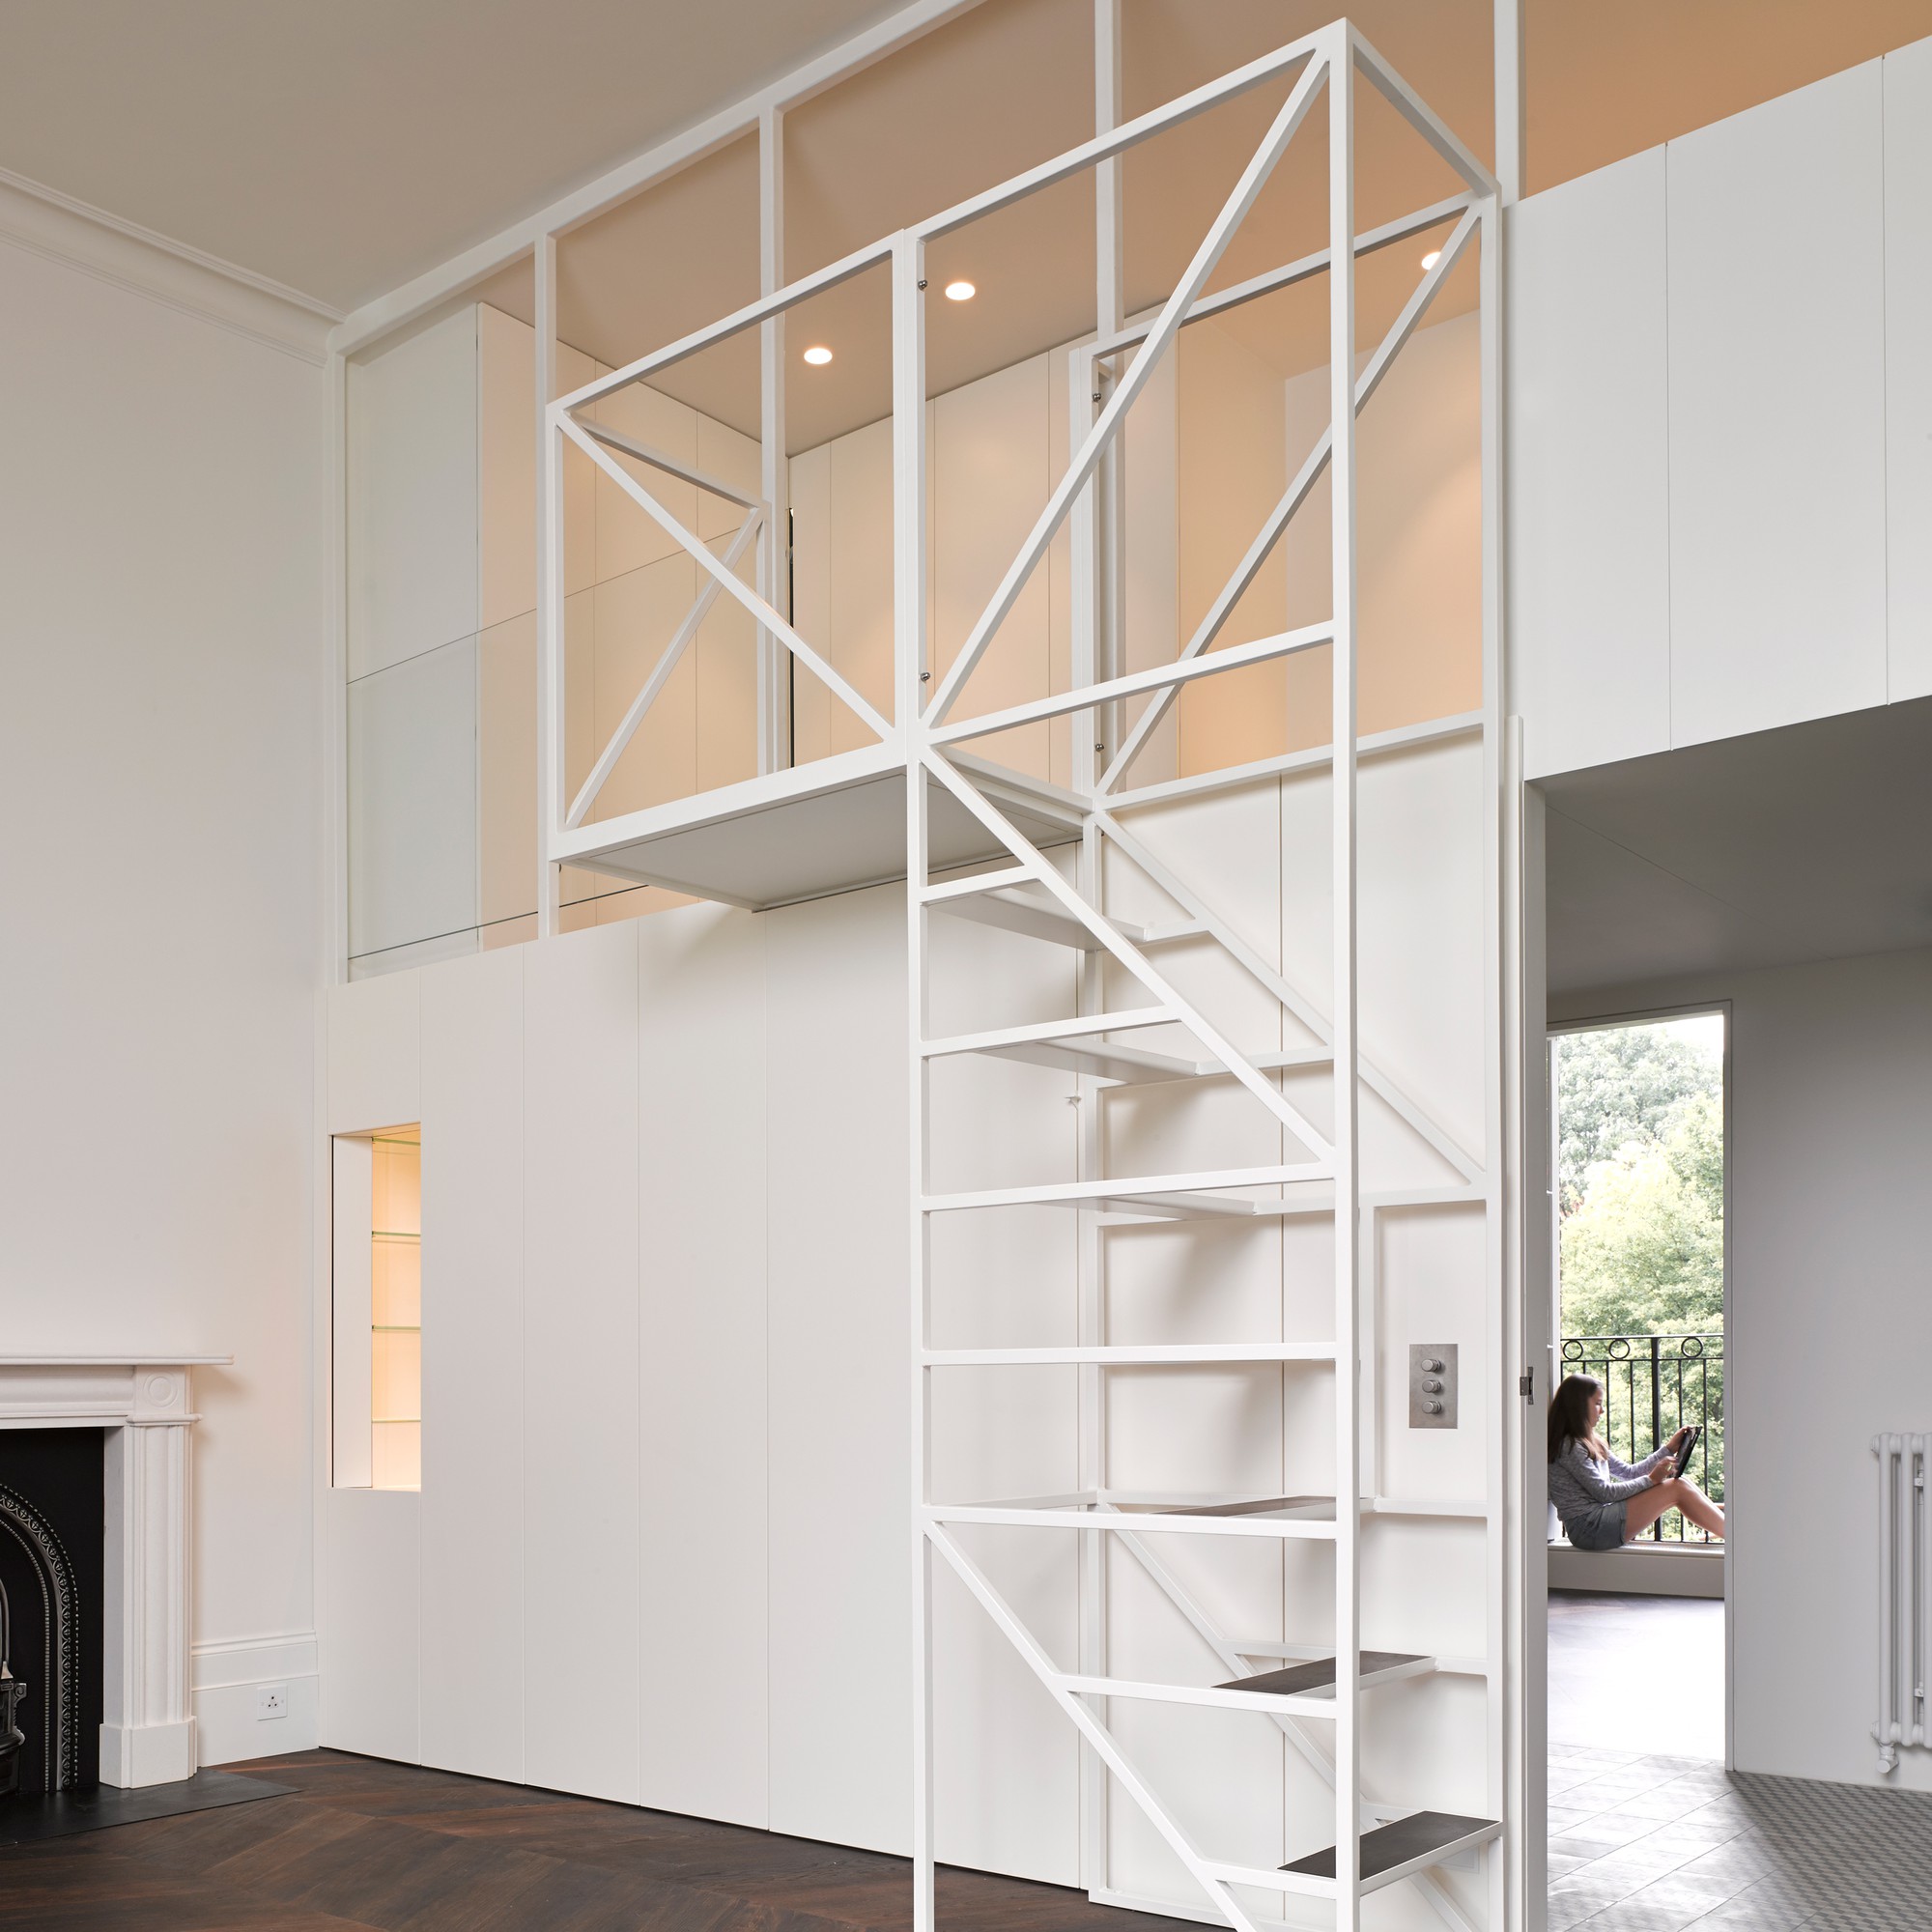 14 mẫu thiết kế cầu thang cho nhà có gác lửng, vừa tiết kiệm diện tích vừa làm duyên cho nhà nhỏ - Ảnh 13.